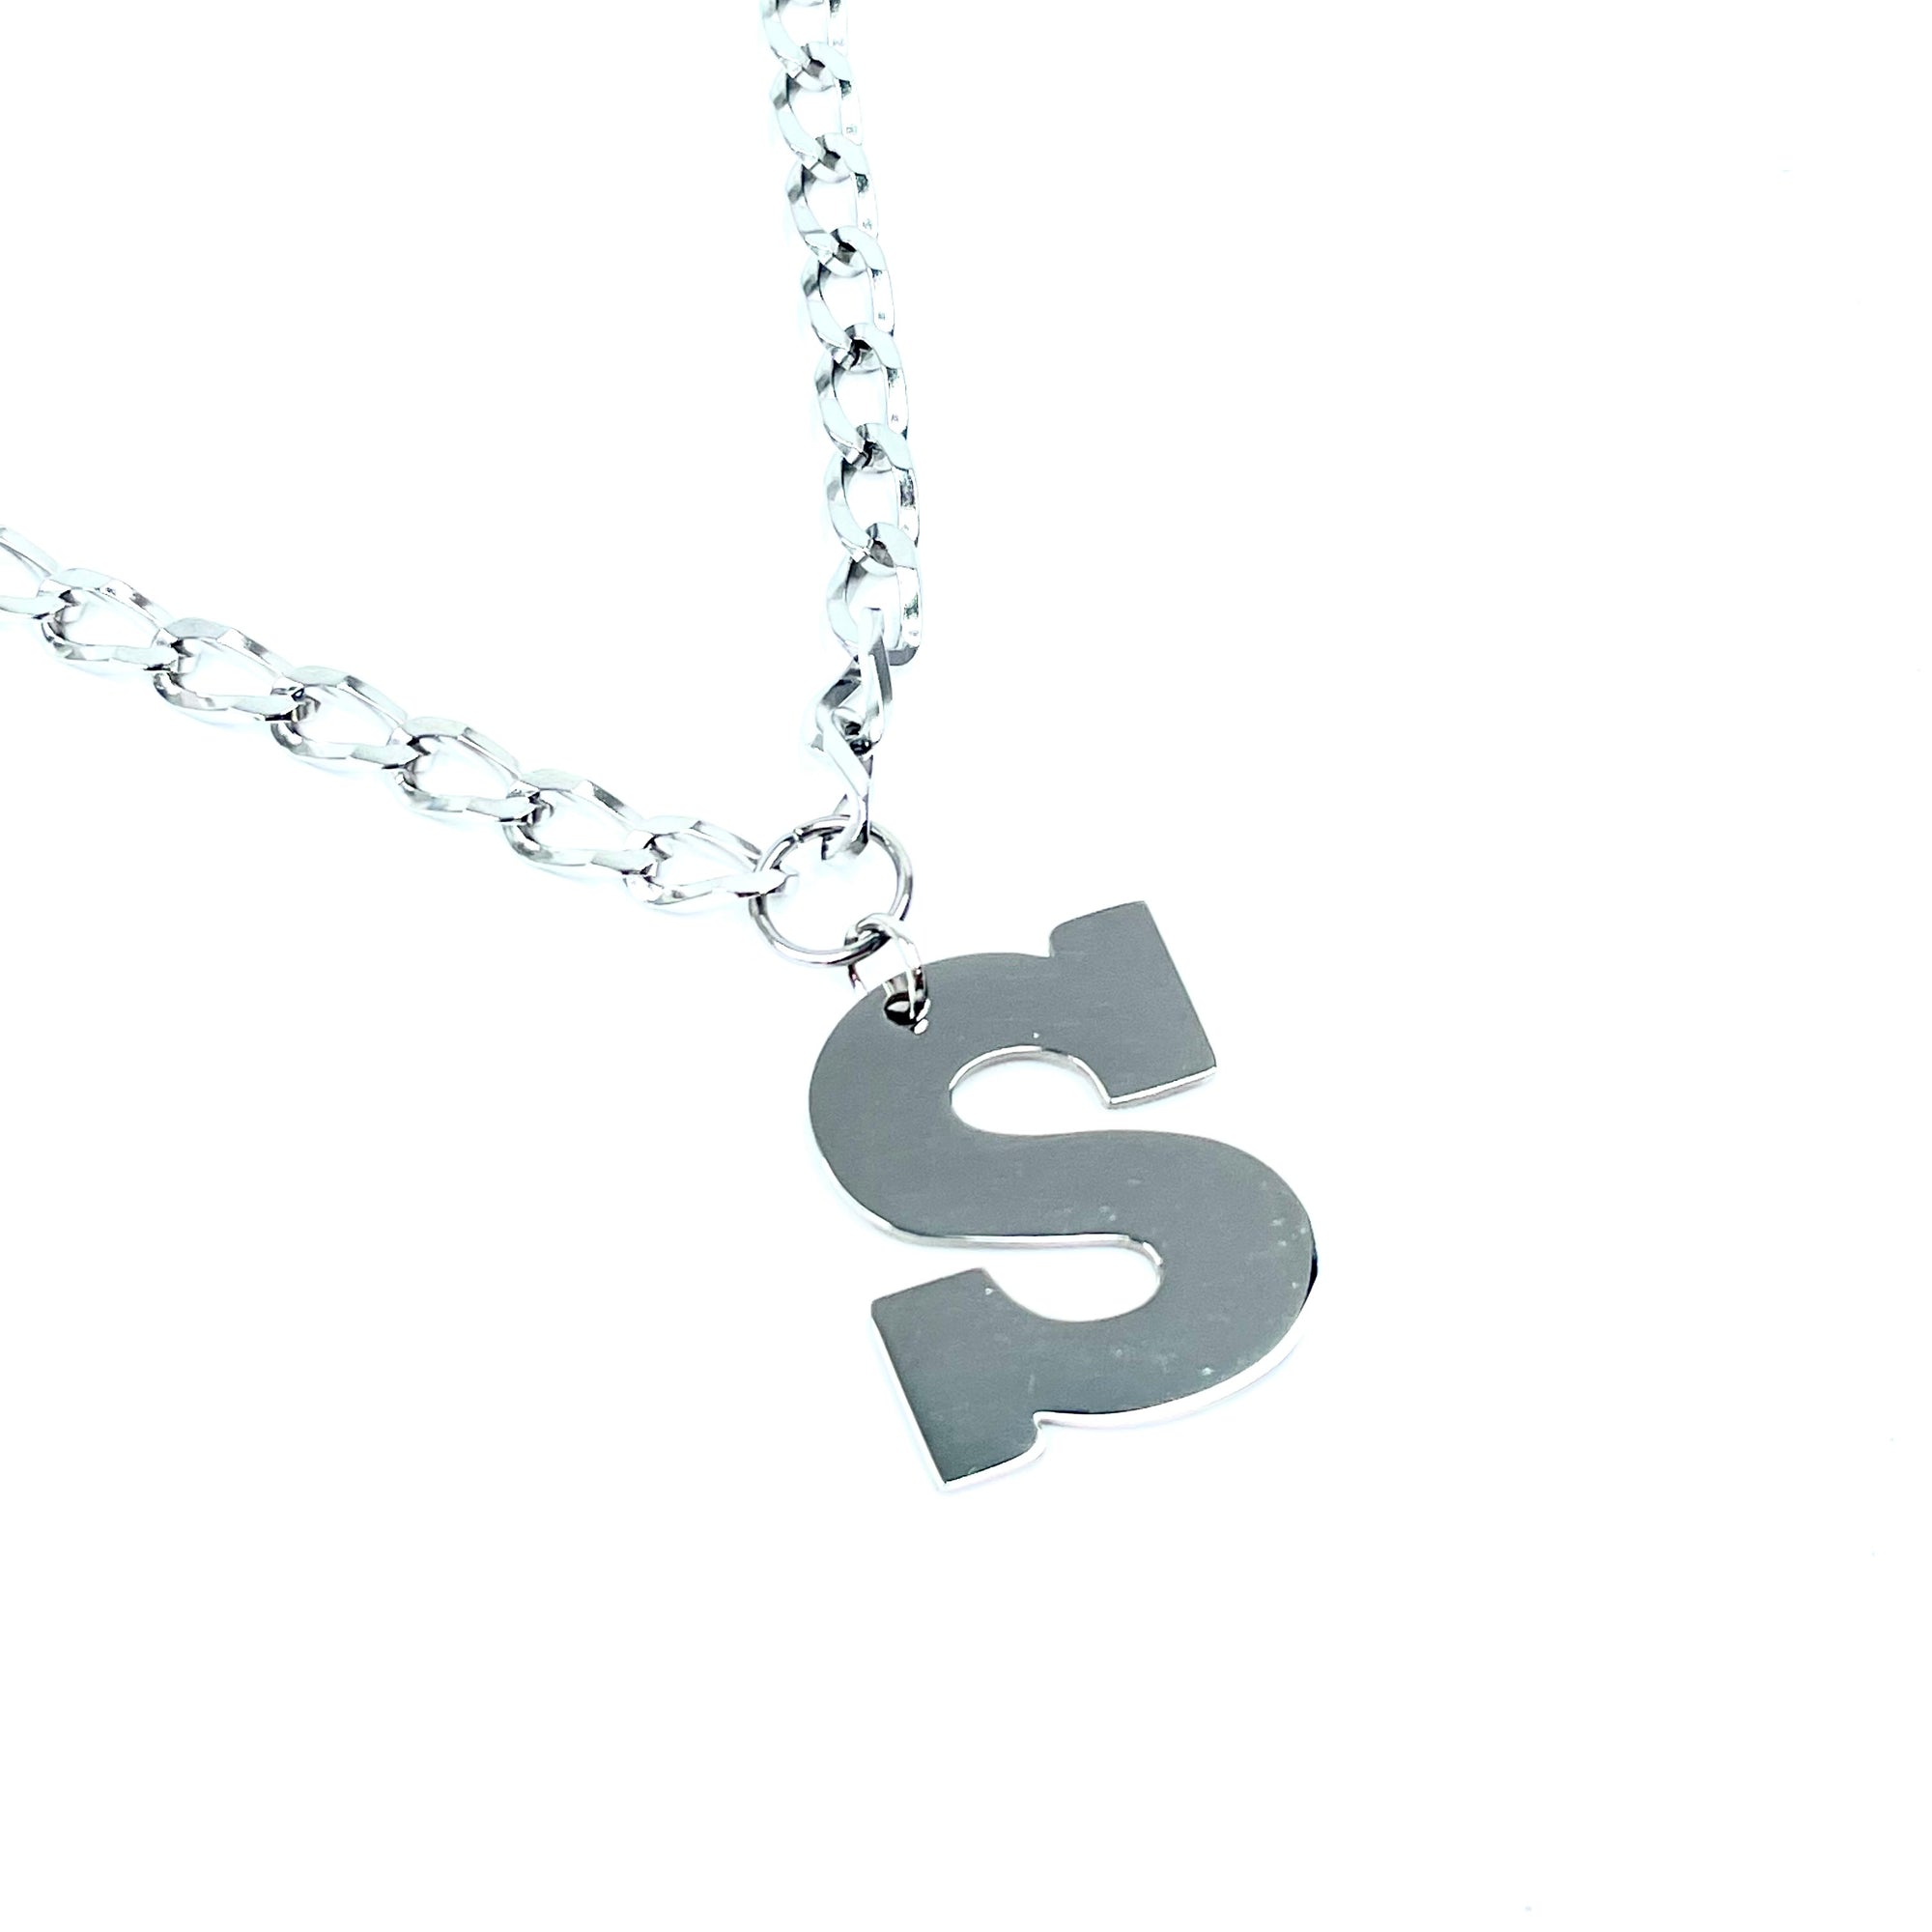 Lettering Legend Necklace Necklaces Cerese D, Inc. Silver S 